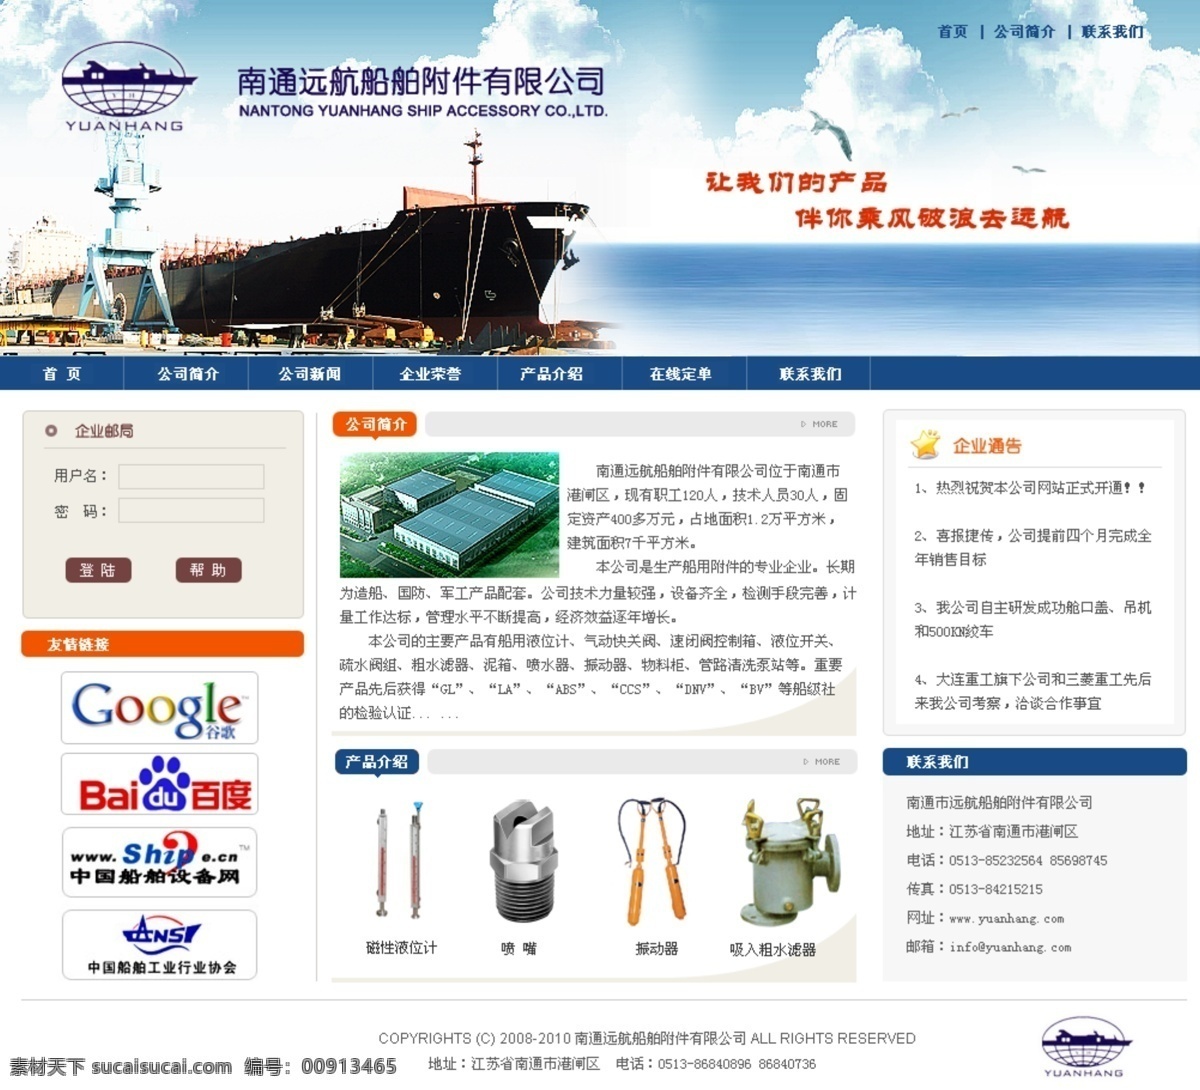 船舶 附件 公司 网页模板 企业网站 大气 网页 模版 网页素材